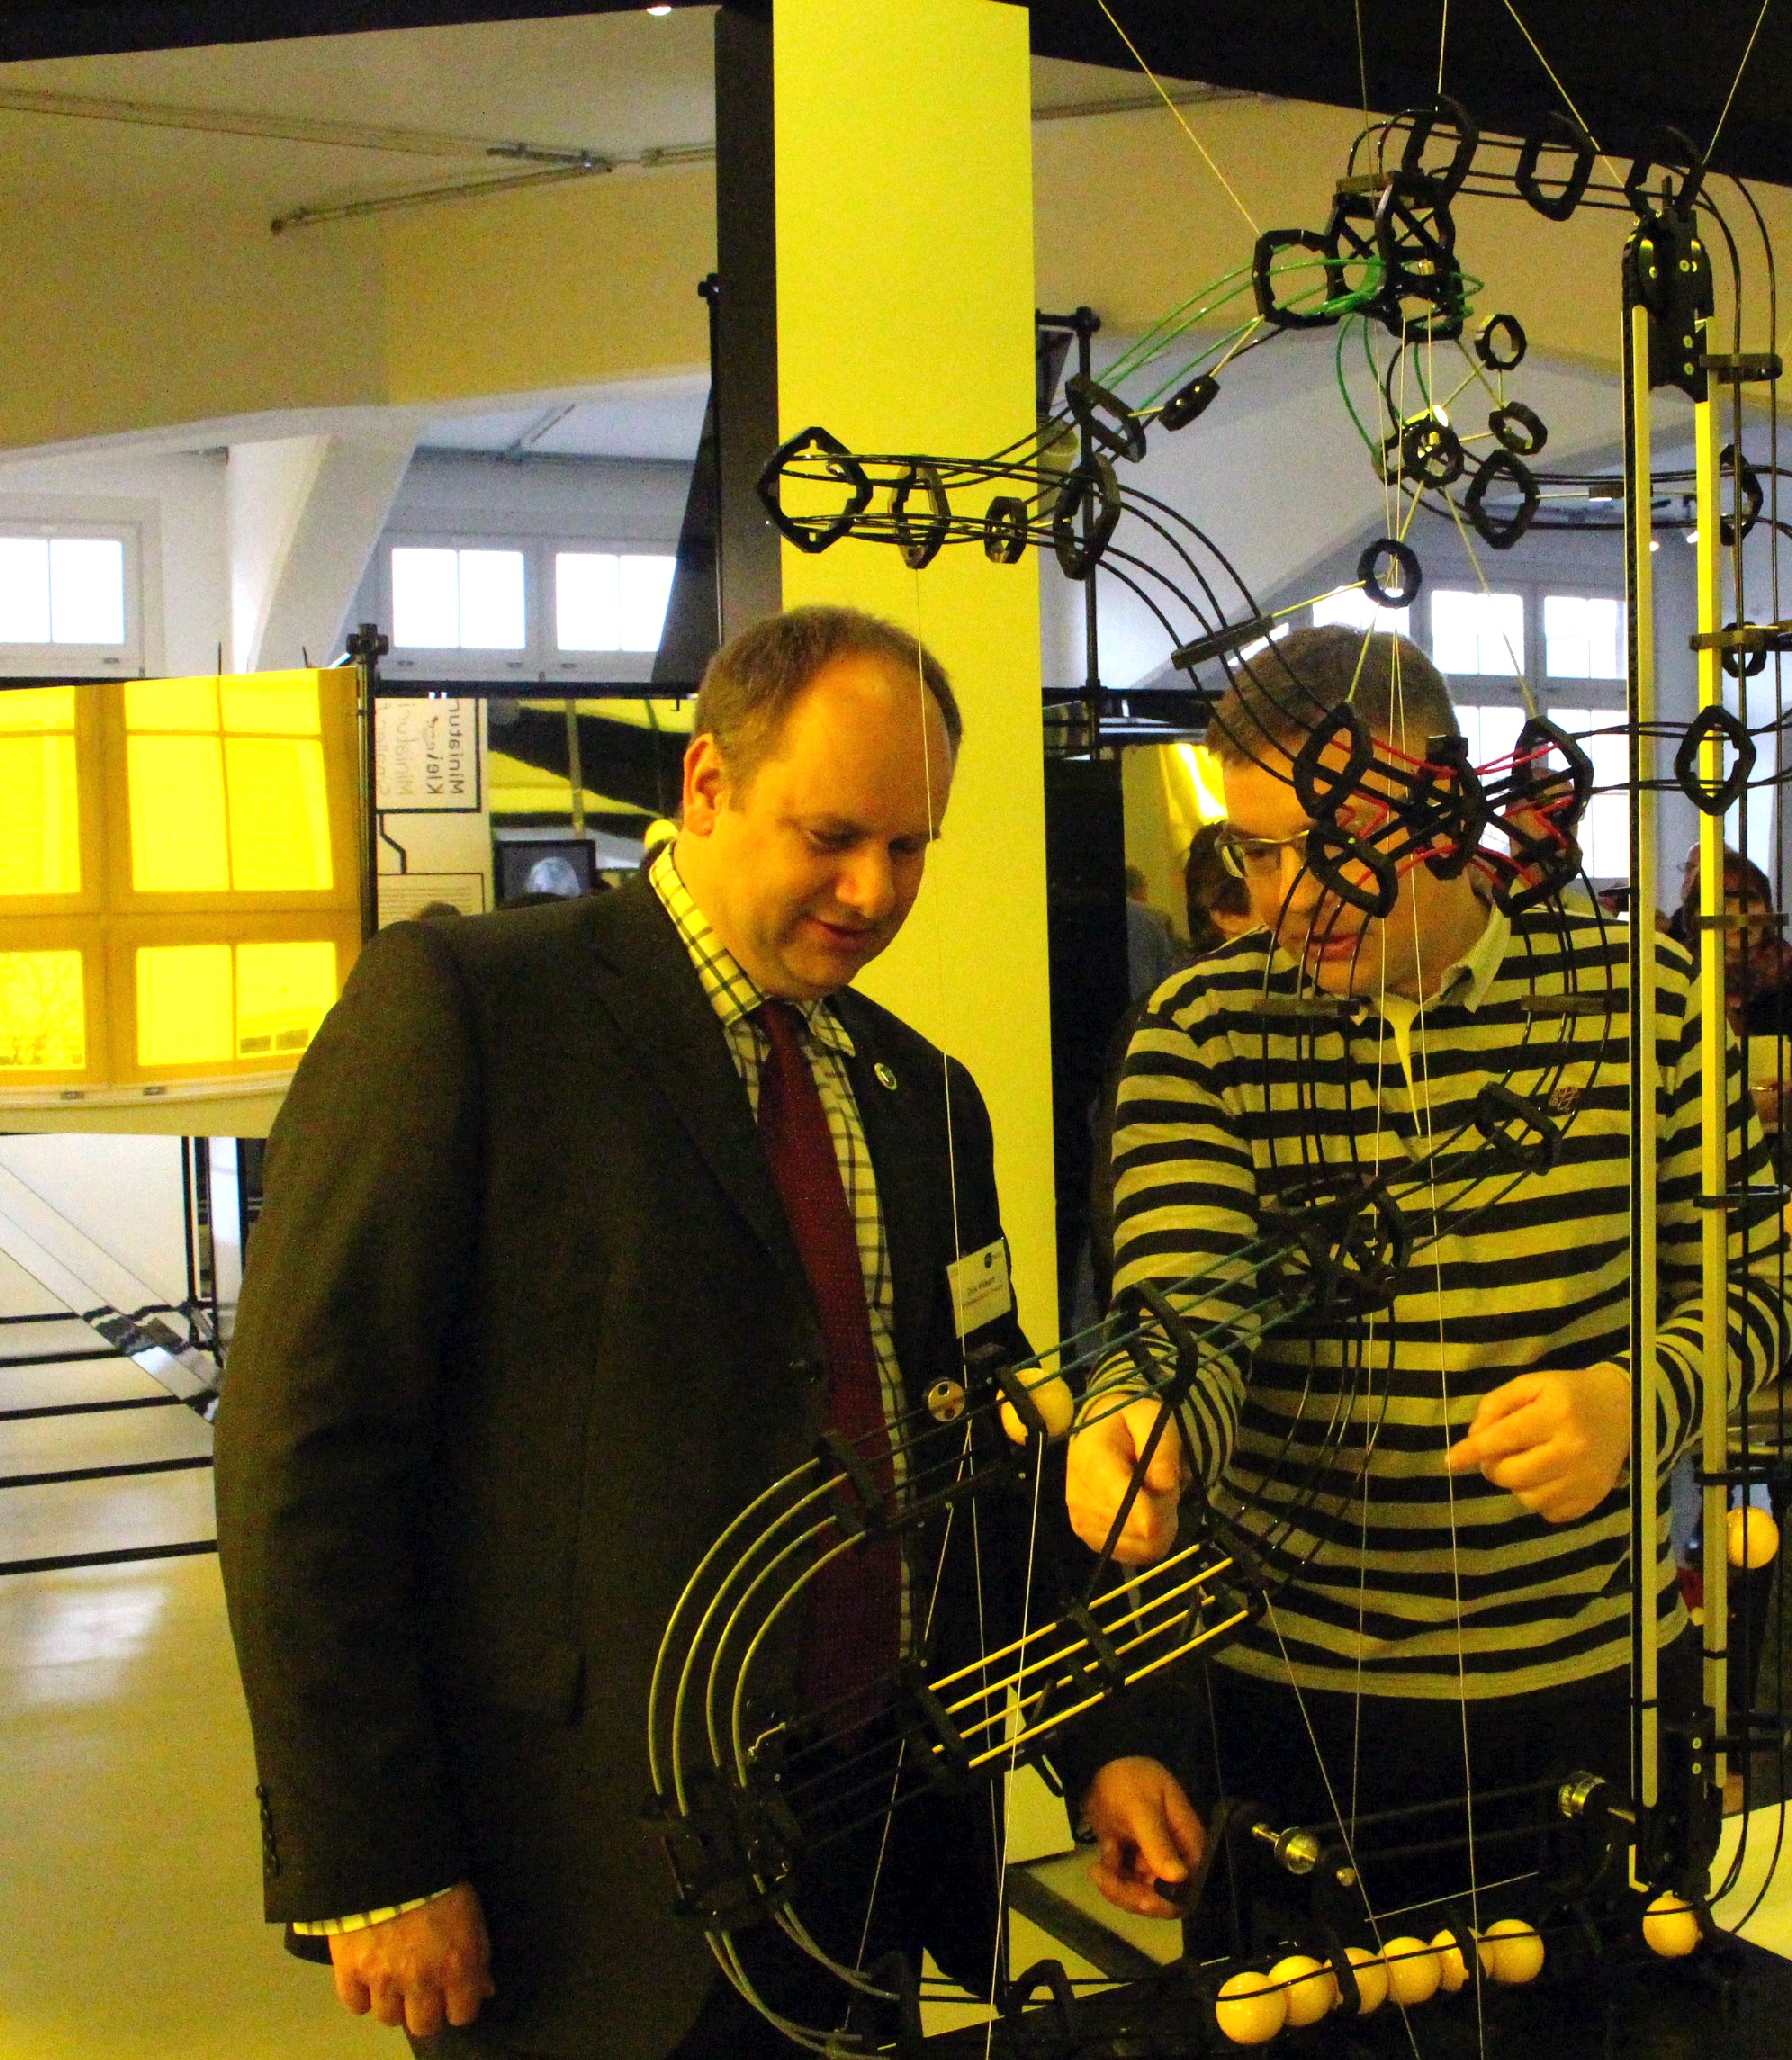 Dresdens Wirtschaftsbürgermeister Dirk Hilbert (FDP) probiert das Kugelspiel aus, das die Funktionsweise eines Transistors veranschaulicht - die Kugeln stehen dabei für Elektronen. Foto: Heiko Weckbrodt